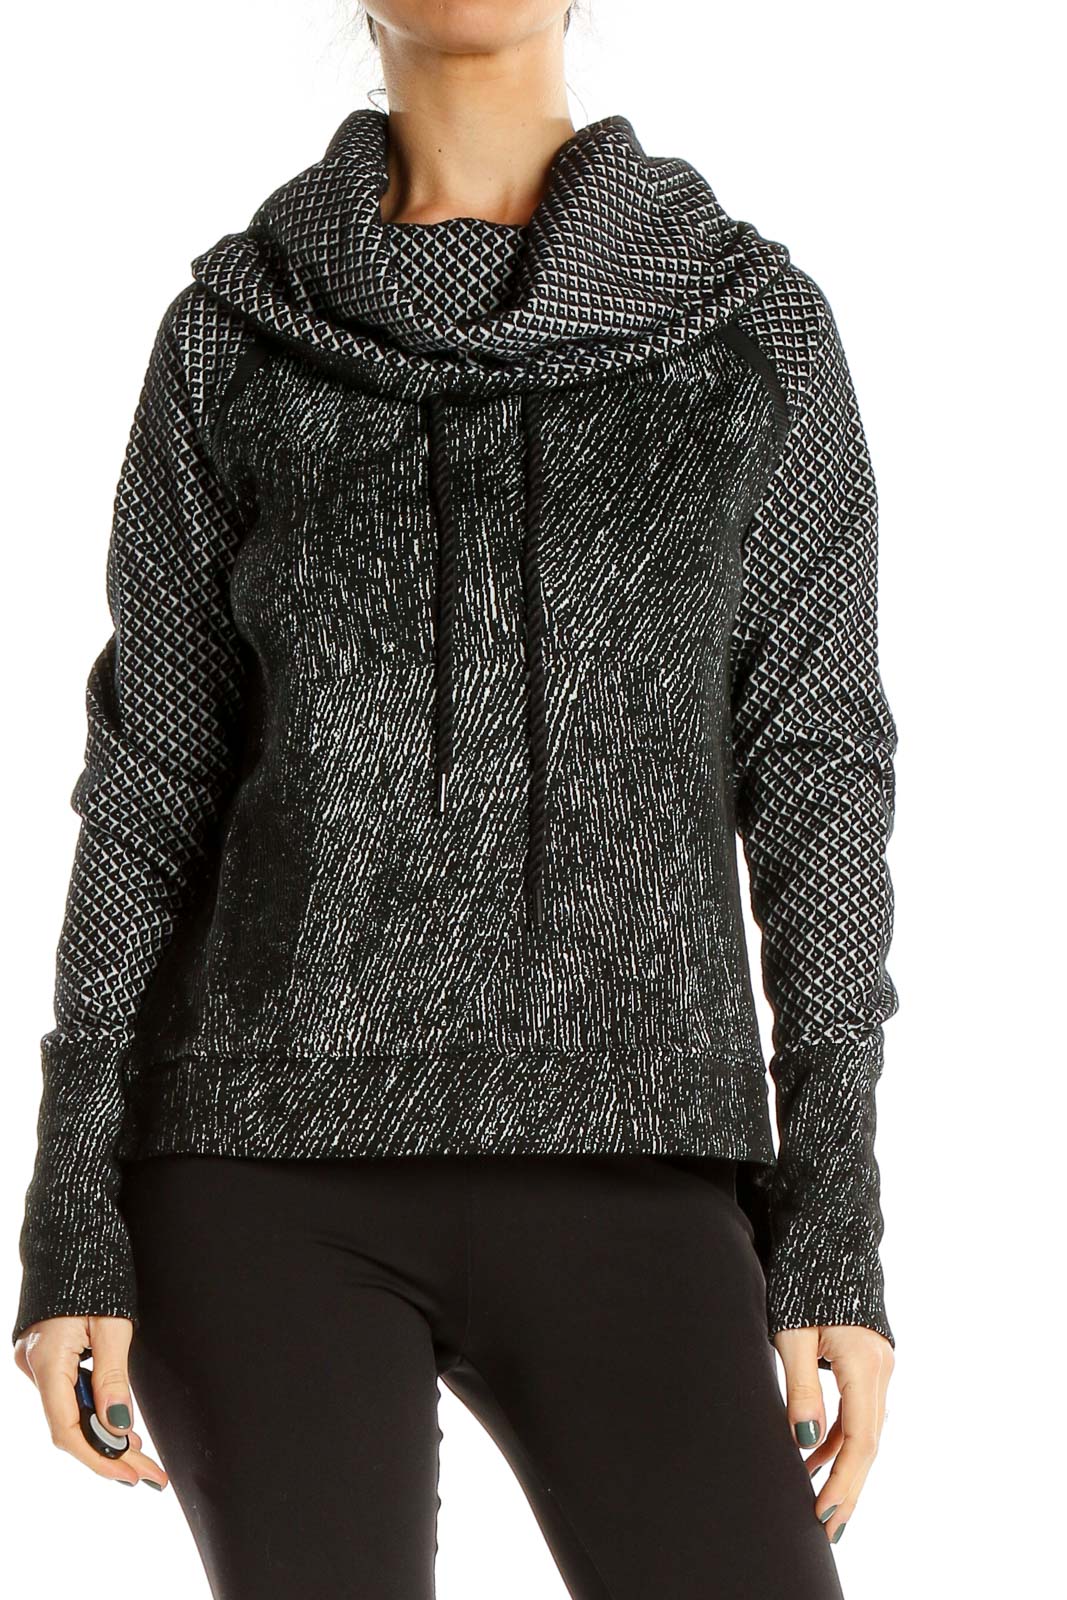 Black Heather Activewear Sweatshirt Front